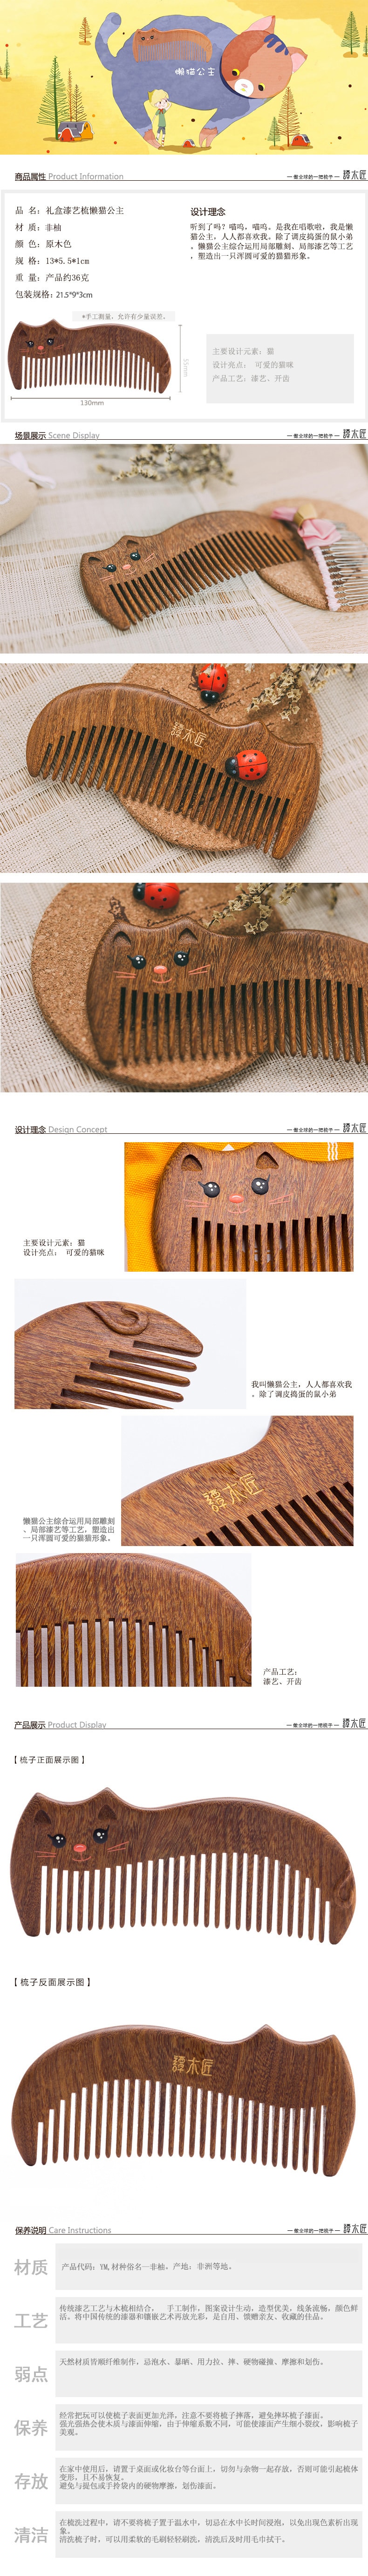 中国谭木匠 懒猫公主木梳子可爱化妆梳 咖啡色 1件入